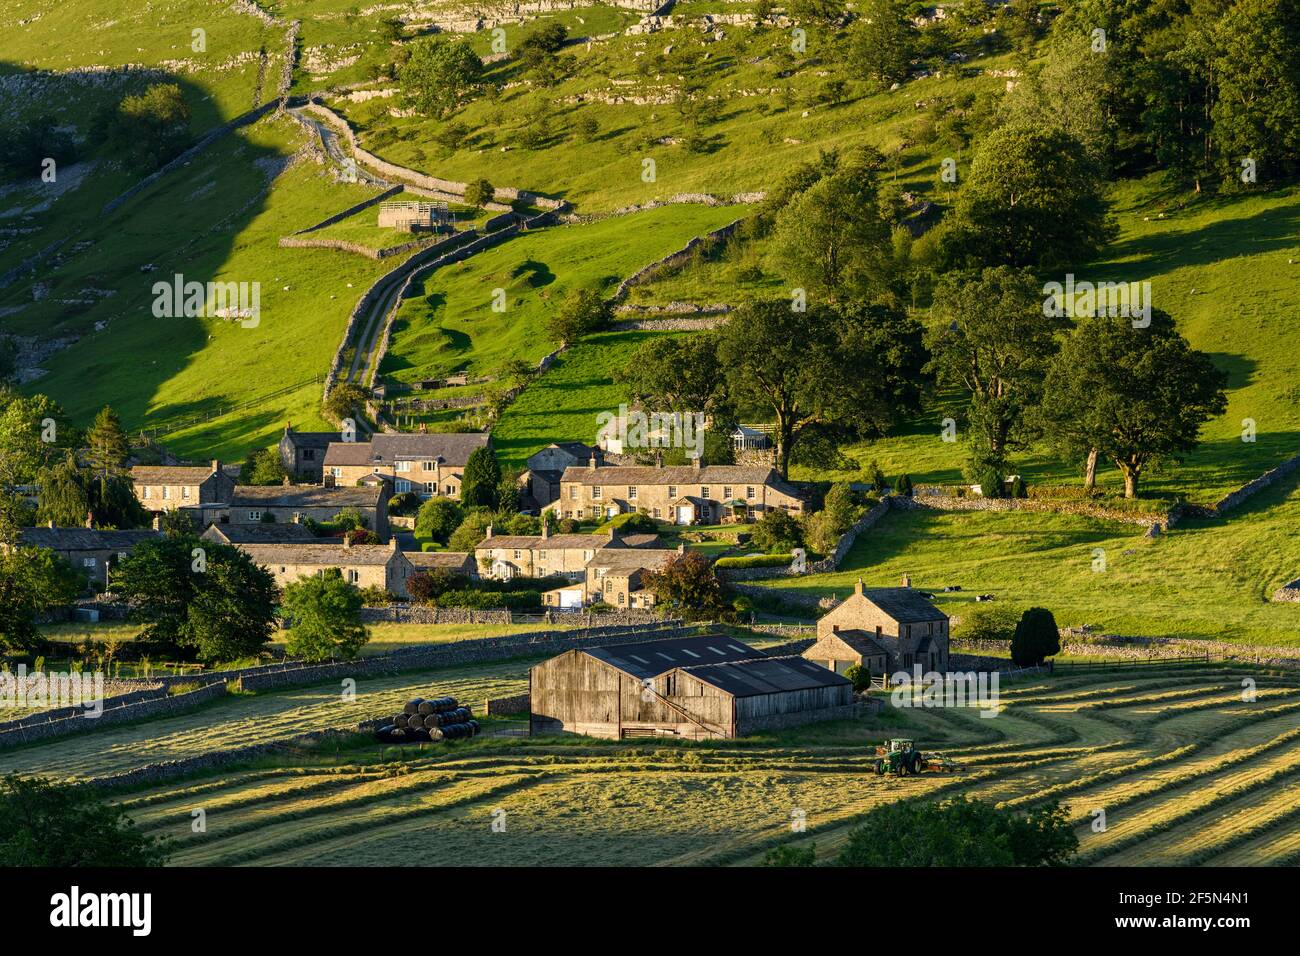 Pintoresco valle de Dales y pequeño pueblo, casas, granero, campos de cultivo, colina, Empinada ladera y tractor de heno - Starbotton, Yorkshire, Inglaterra Reino Unido. Foto de stock